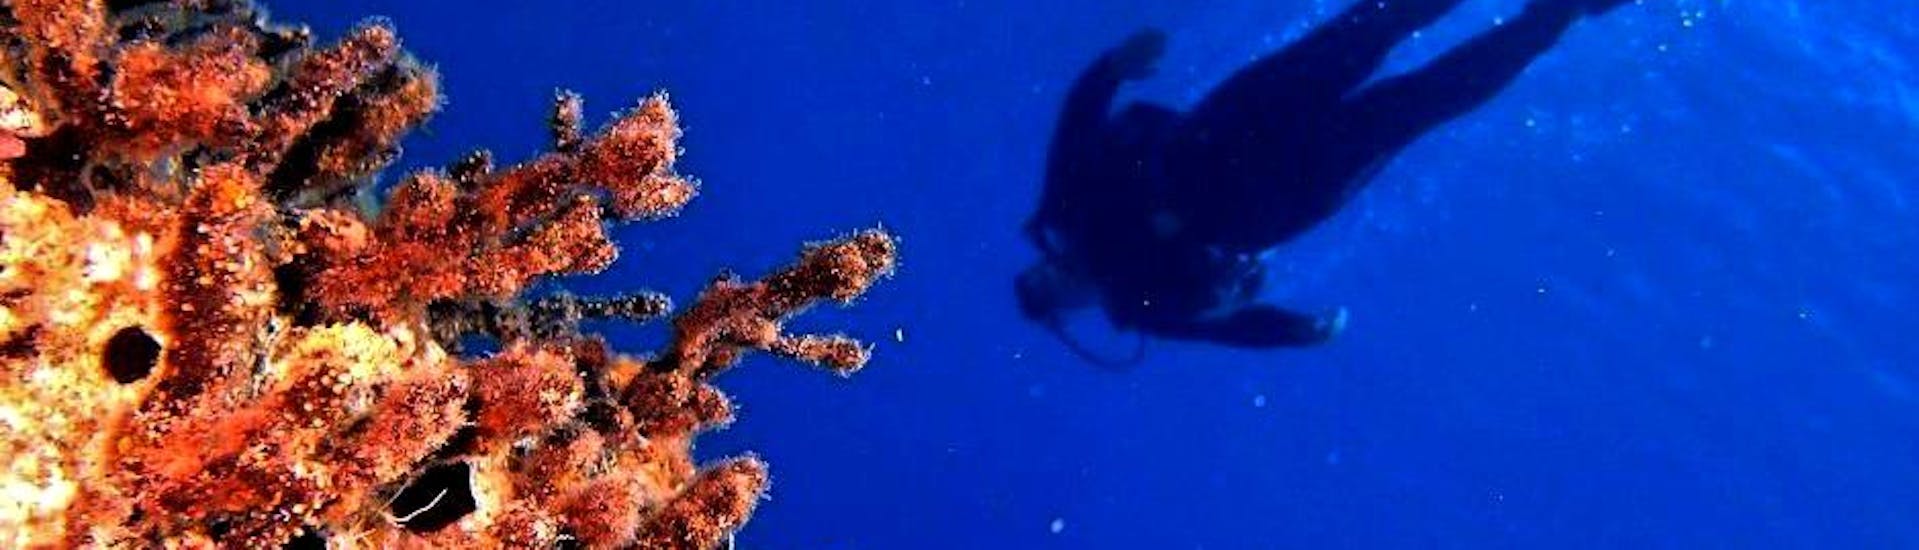 Un plongeur explorant la flore et la faune marines fascinantes de la mer de Crète lors de son cours de plongée sous-marine - PADI Advanced Open Water Diver avec un instructeur de plongée expérimenté du centre de plongée Evelin.